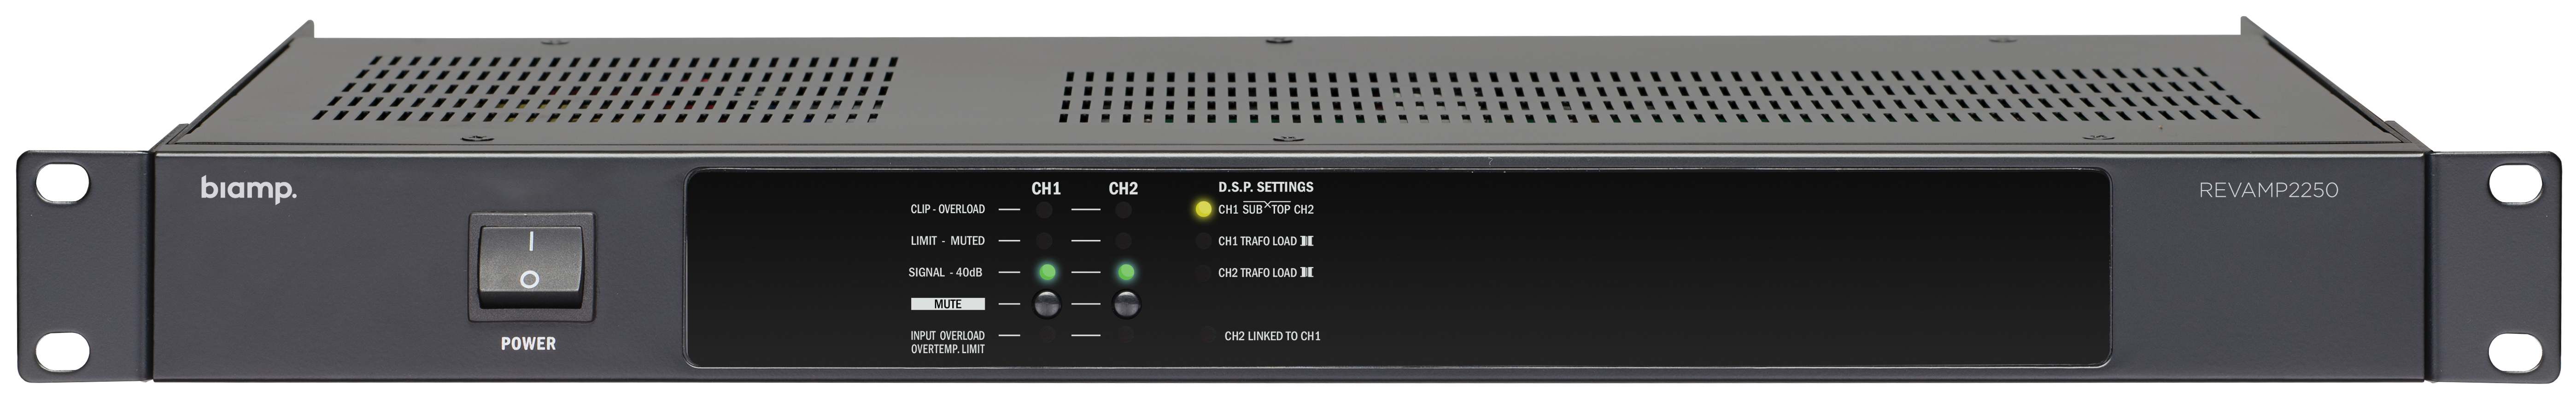 Two-channel bridgeable digital power amplifier, 2x250 watts, 4 ohms. 